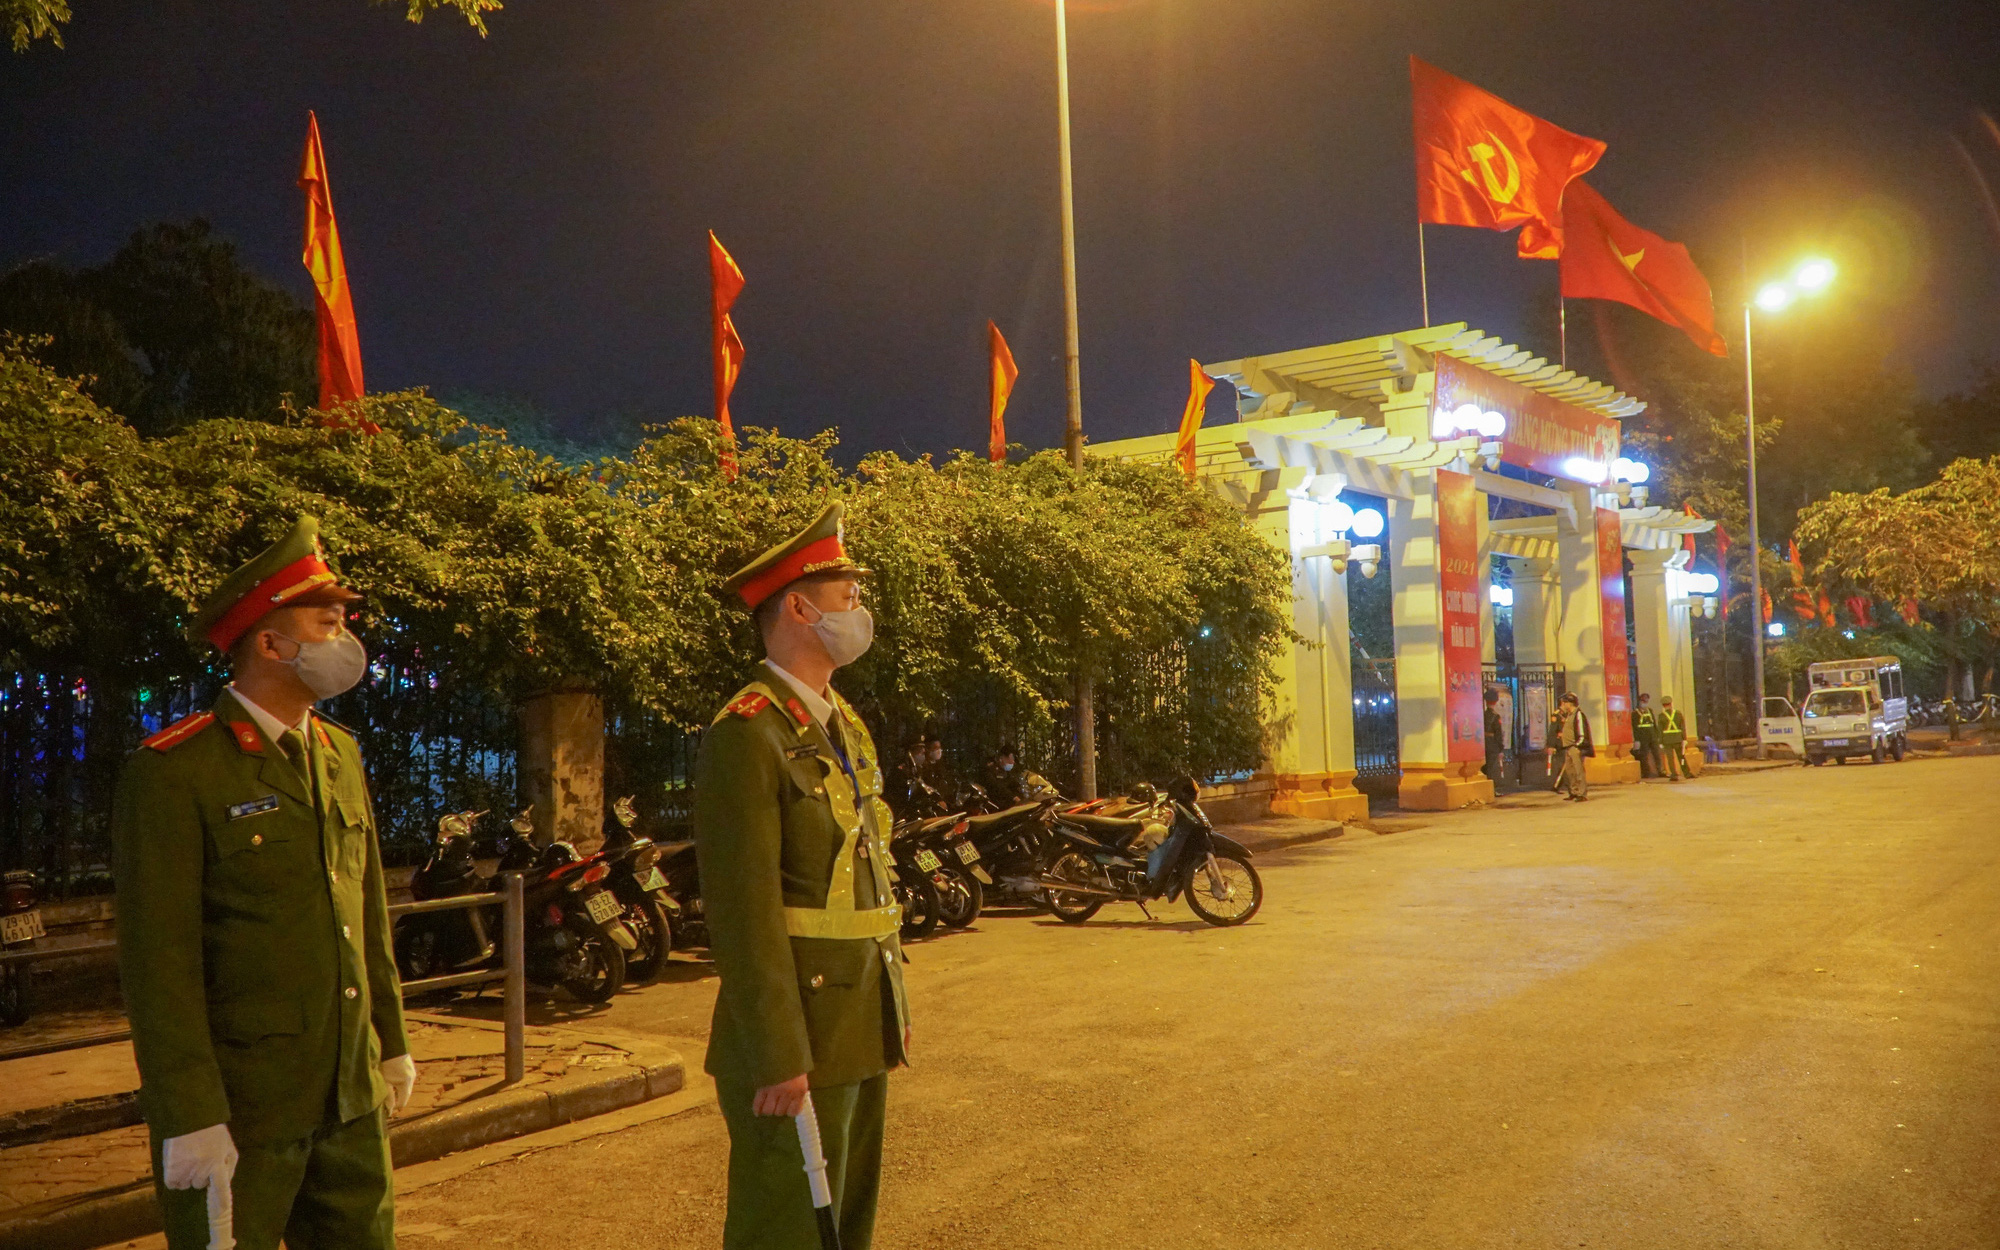 An ninh thắt chặt xung quanh điểm bắn pháo hoa duy nhất tại Hà Nội